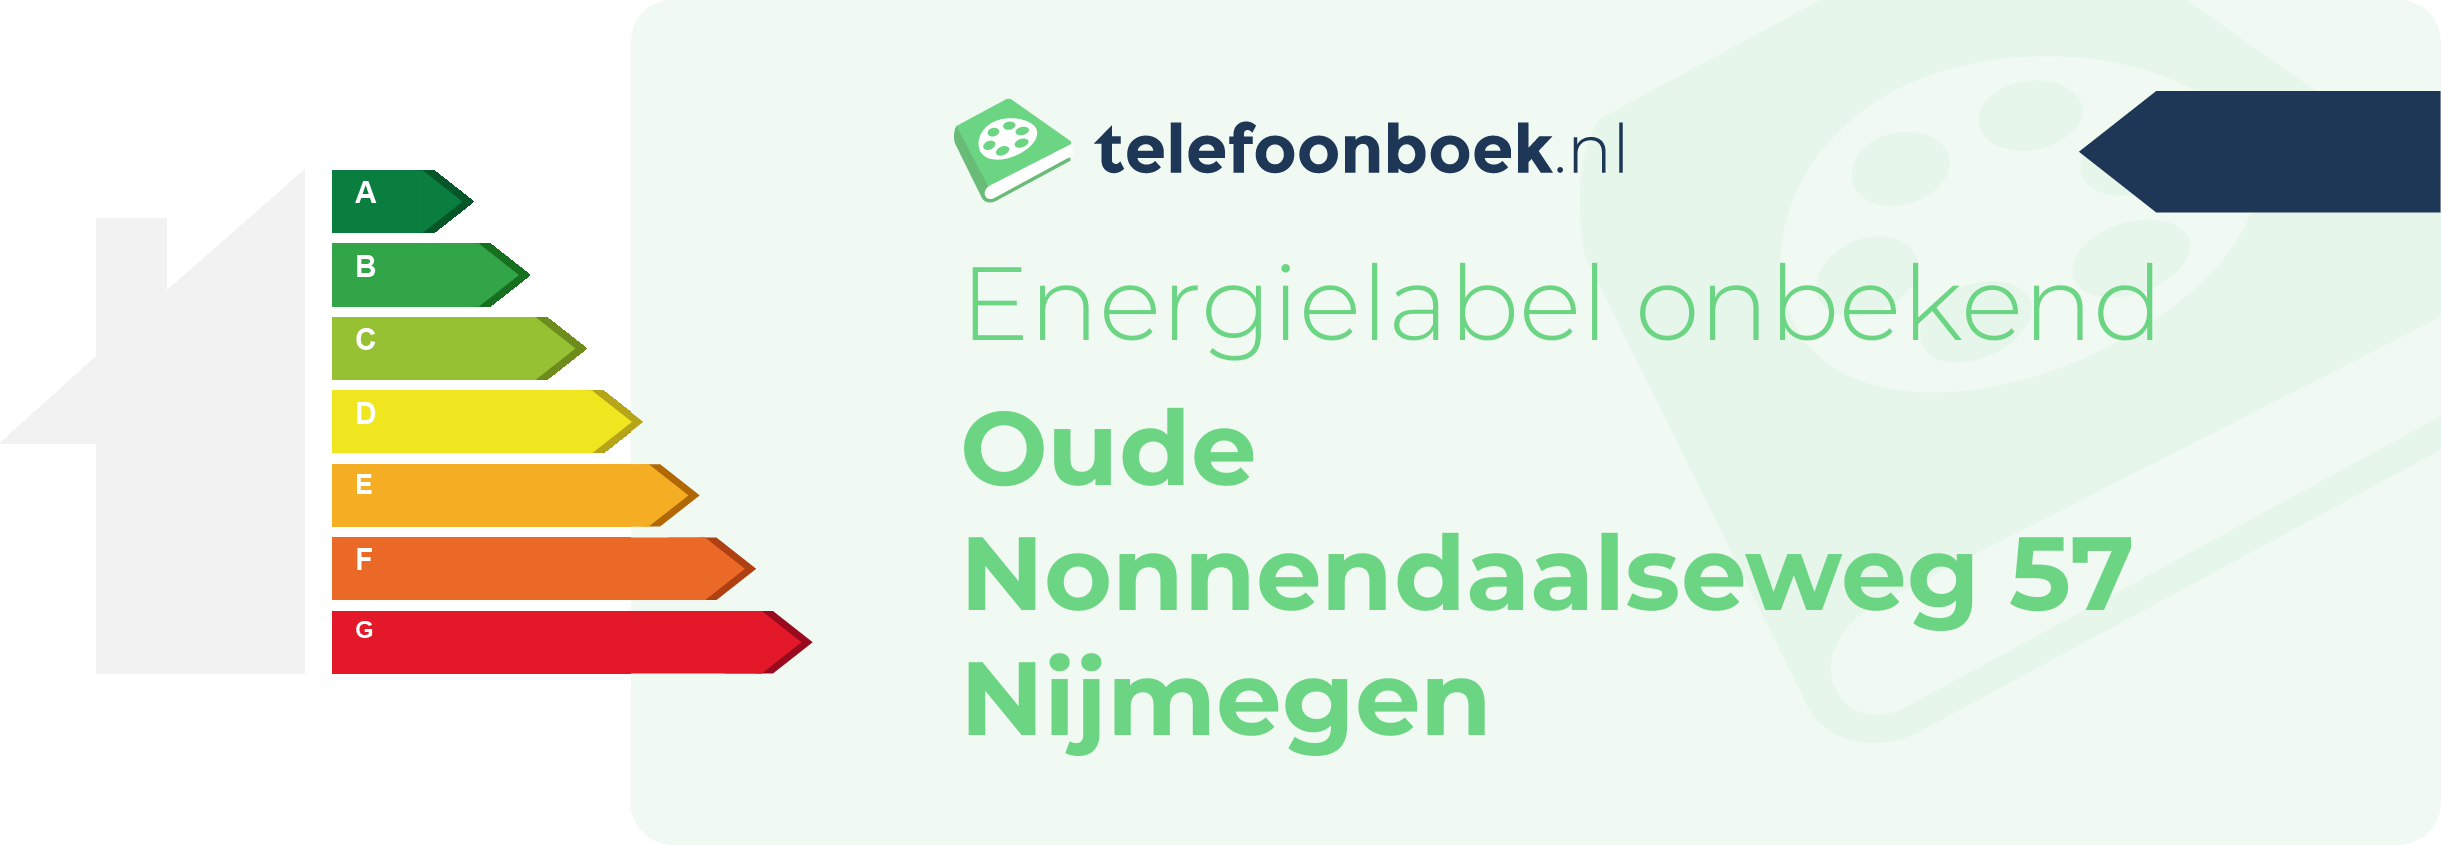 Energielabel Oude Nonnendaalseweg 57 Nijmegen